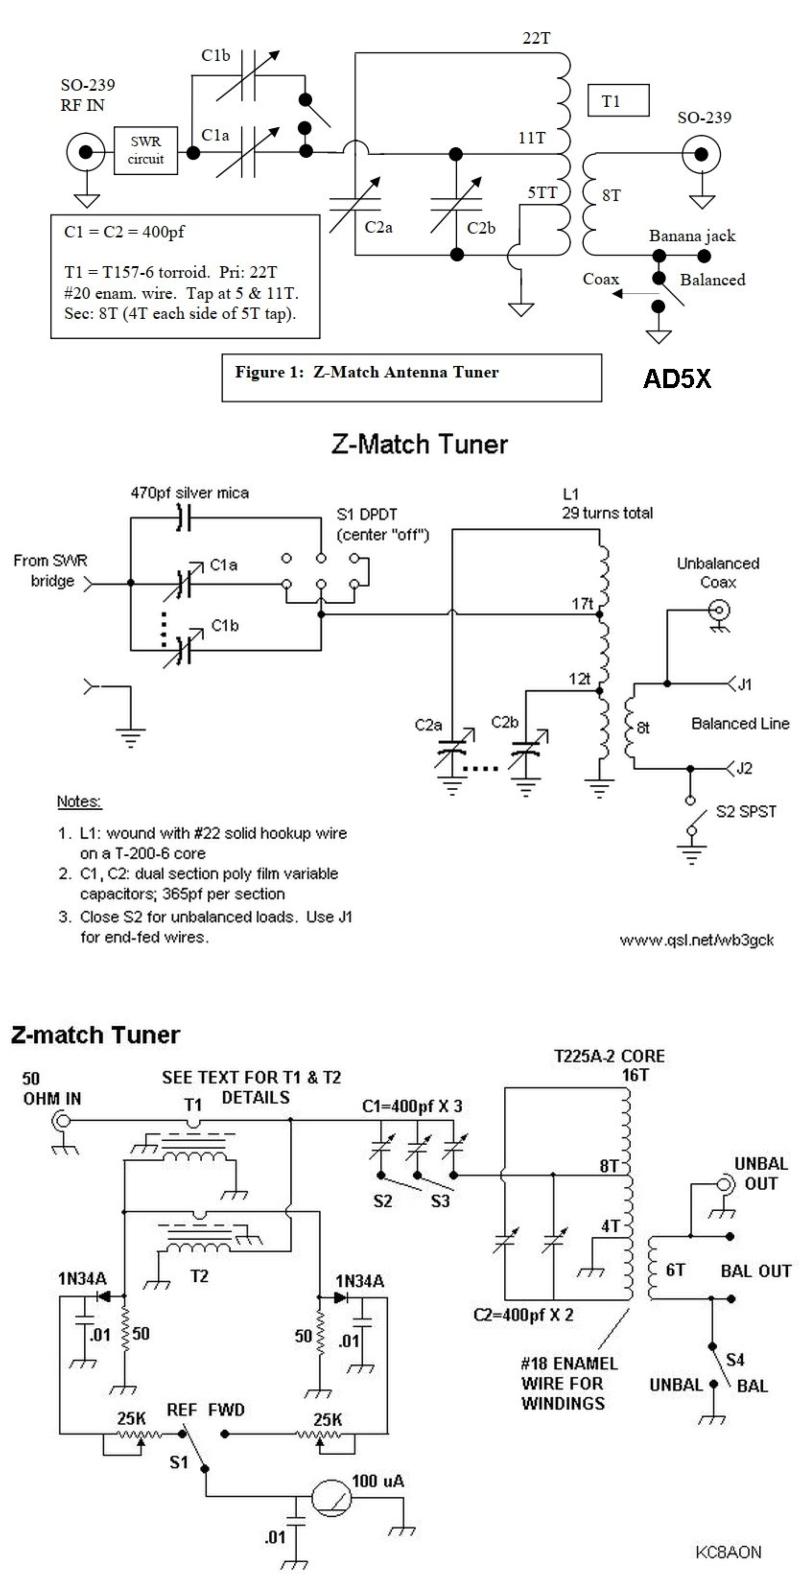 Z-Match schematics found online